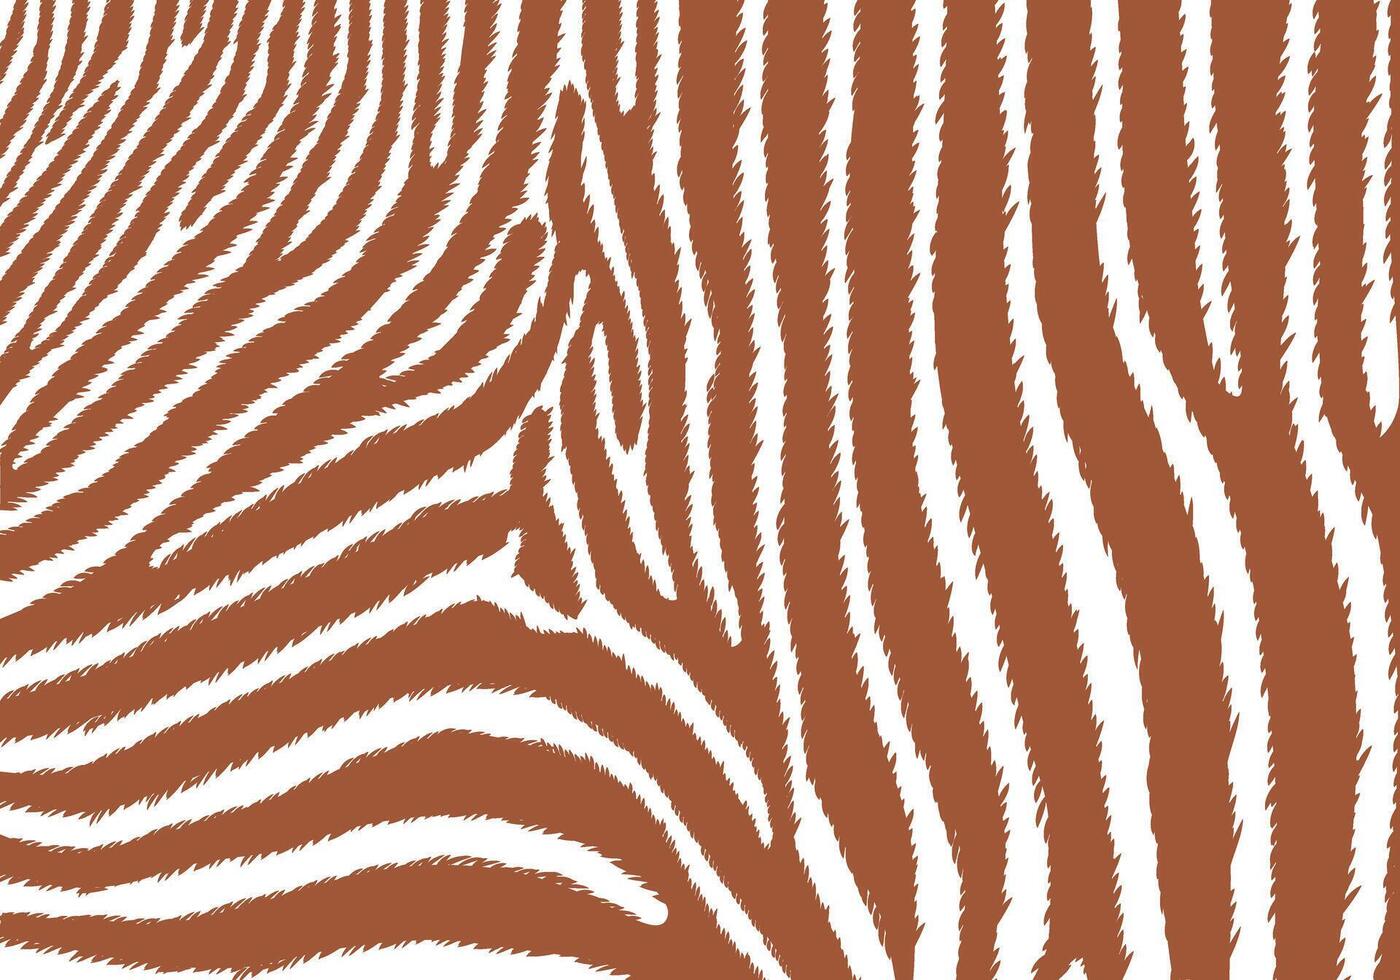 Zebra pattern brown color vector for background design.